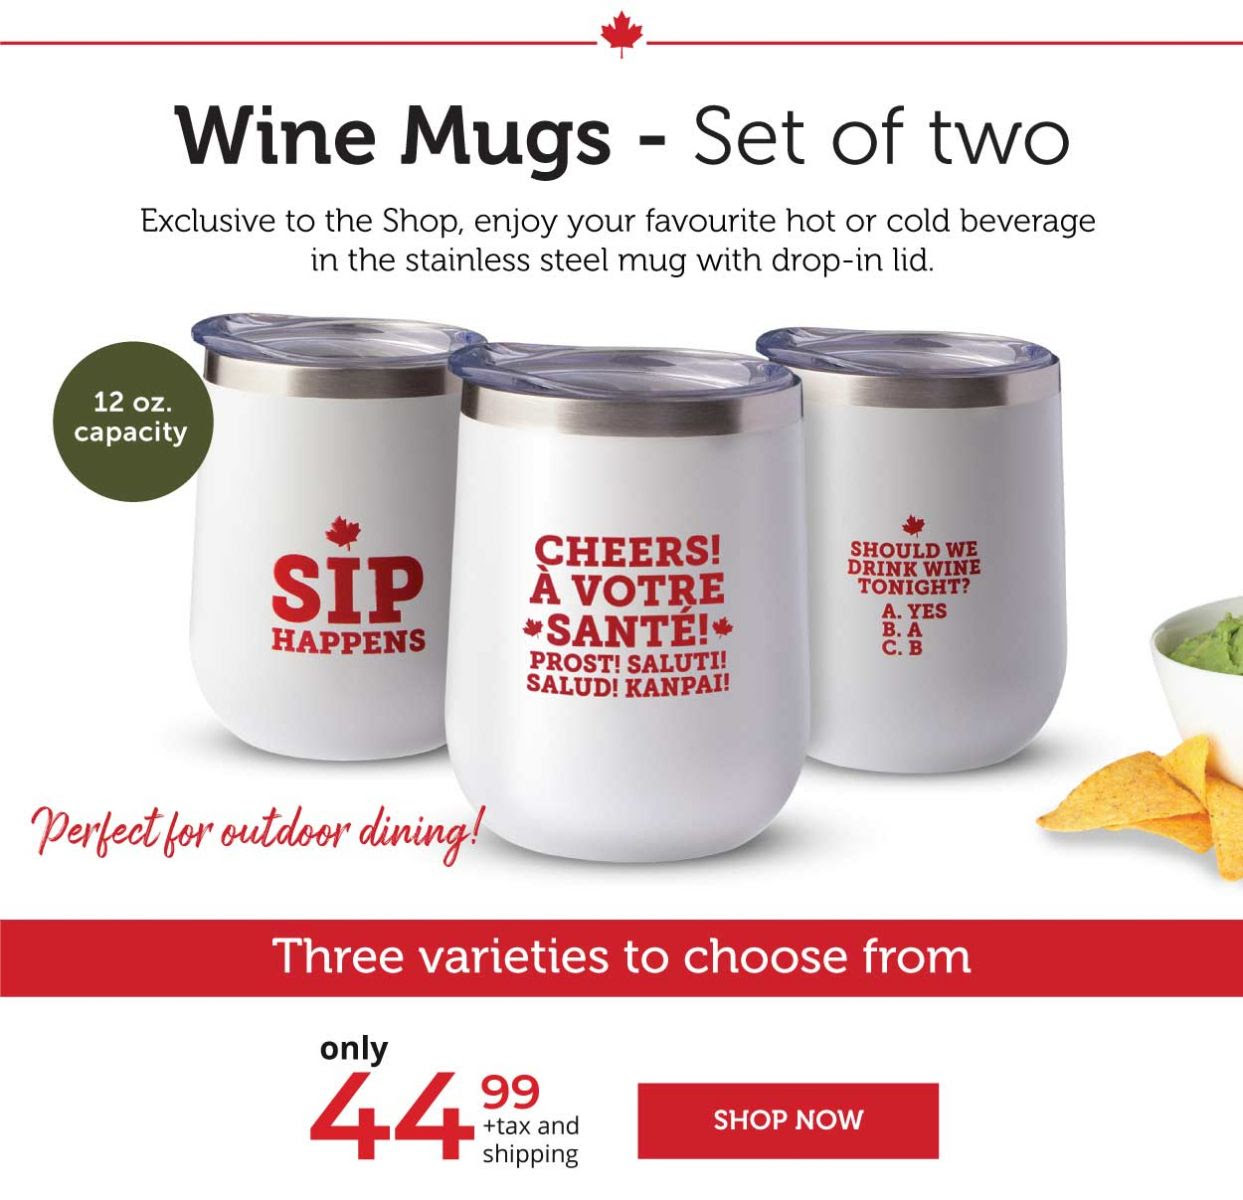 Wine Mugs - Set of two